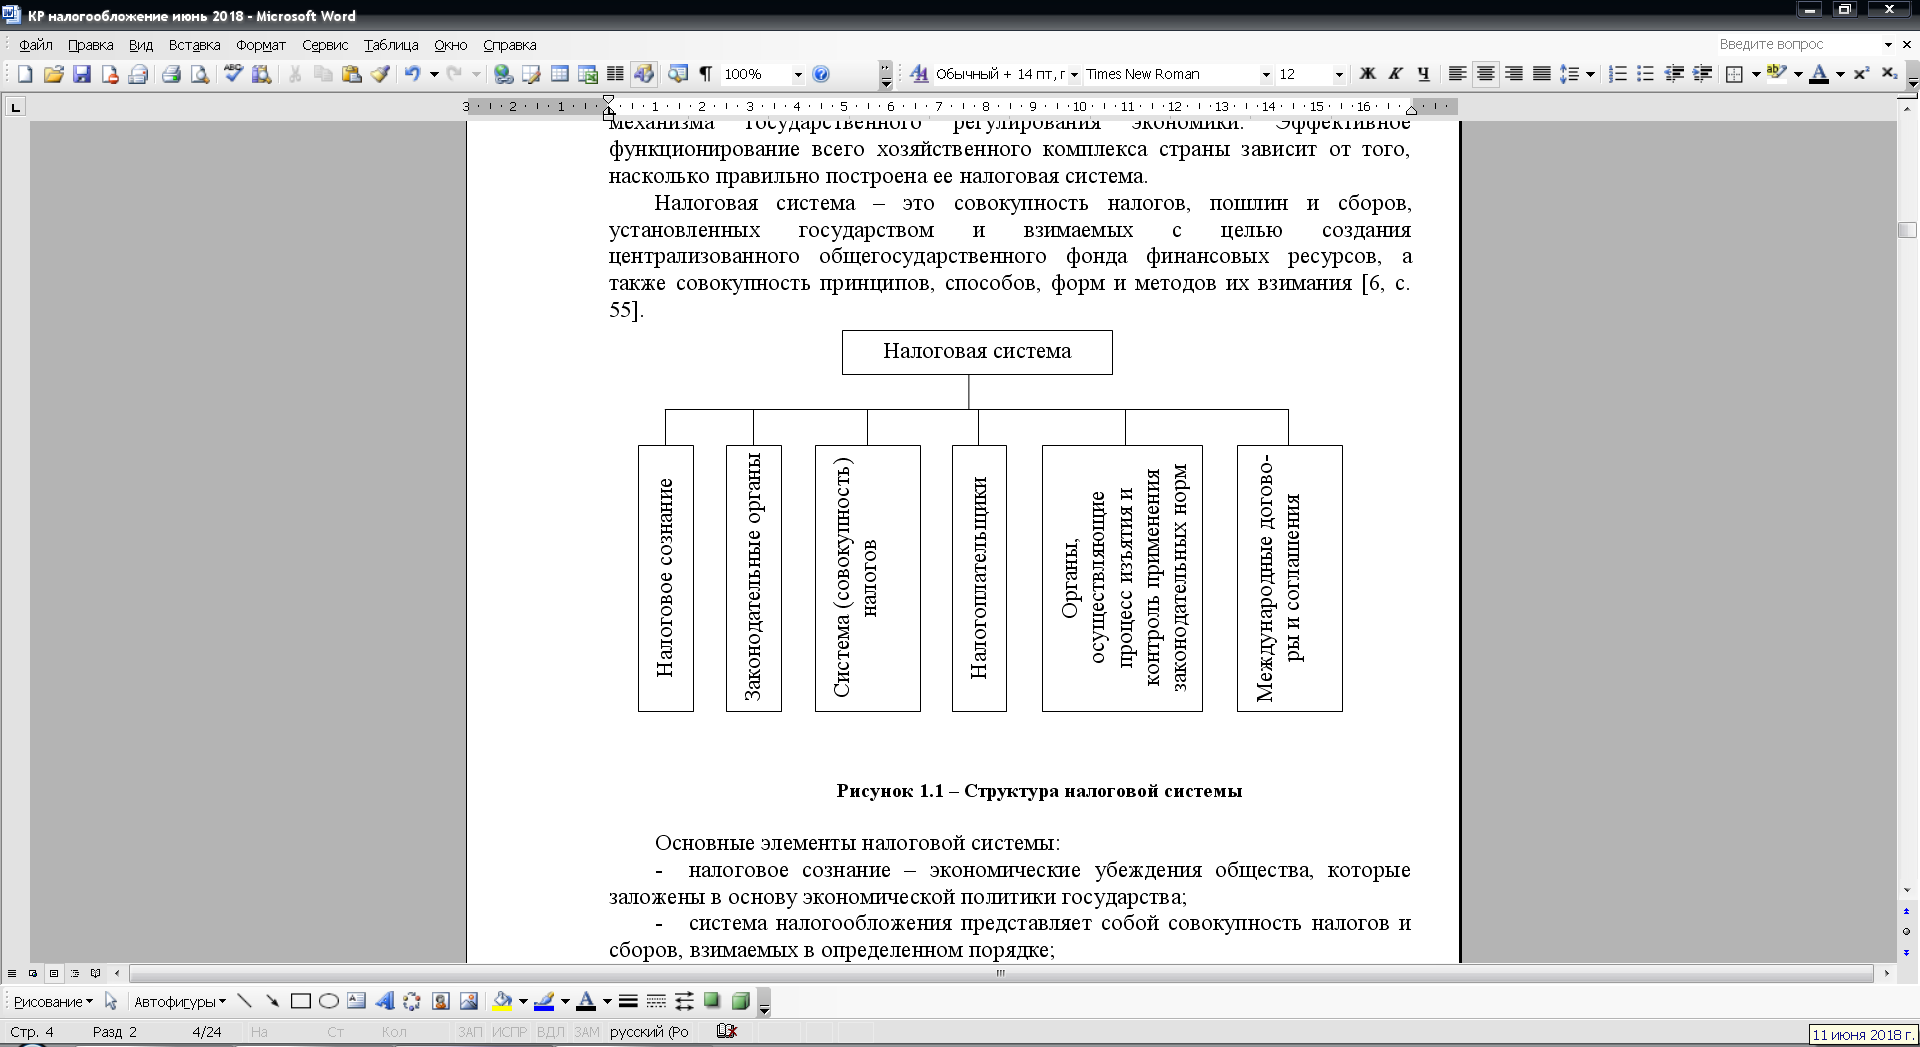 Курсовая работа по теме Анализ налоговой системы Республики Беларусь